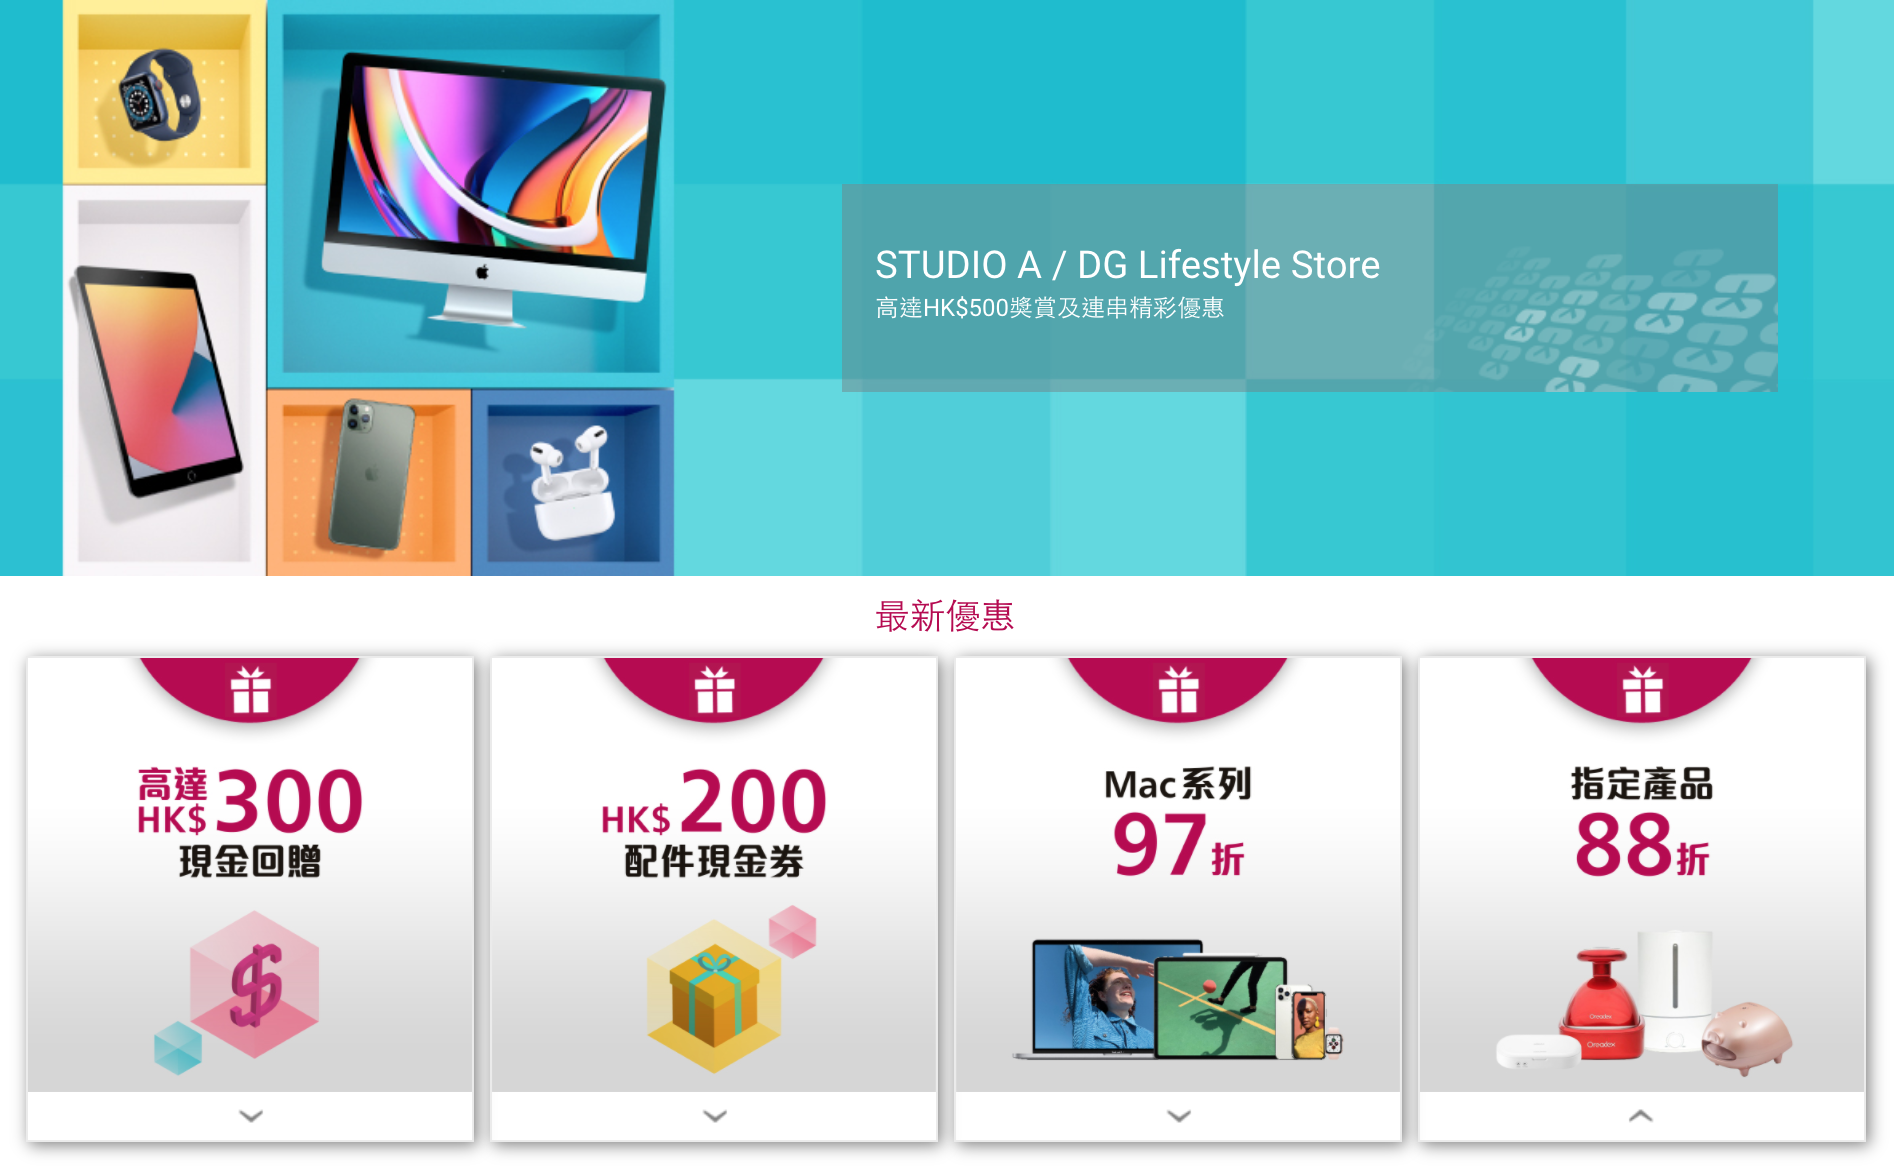 大新信用卡STUDIO A / DG Lifestyle Store購物簽賬優惠！可享高達HK$450現金回贈 + iPad Air 限定套裝優惠 + 6個月分期0手續費優惠！